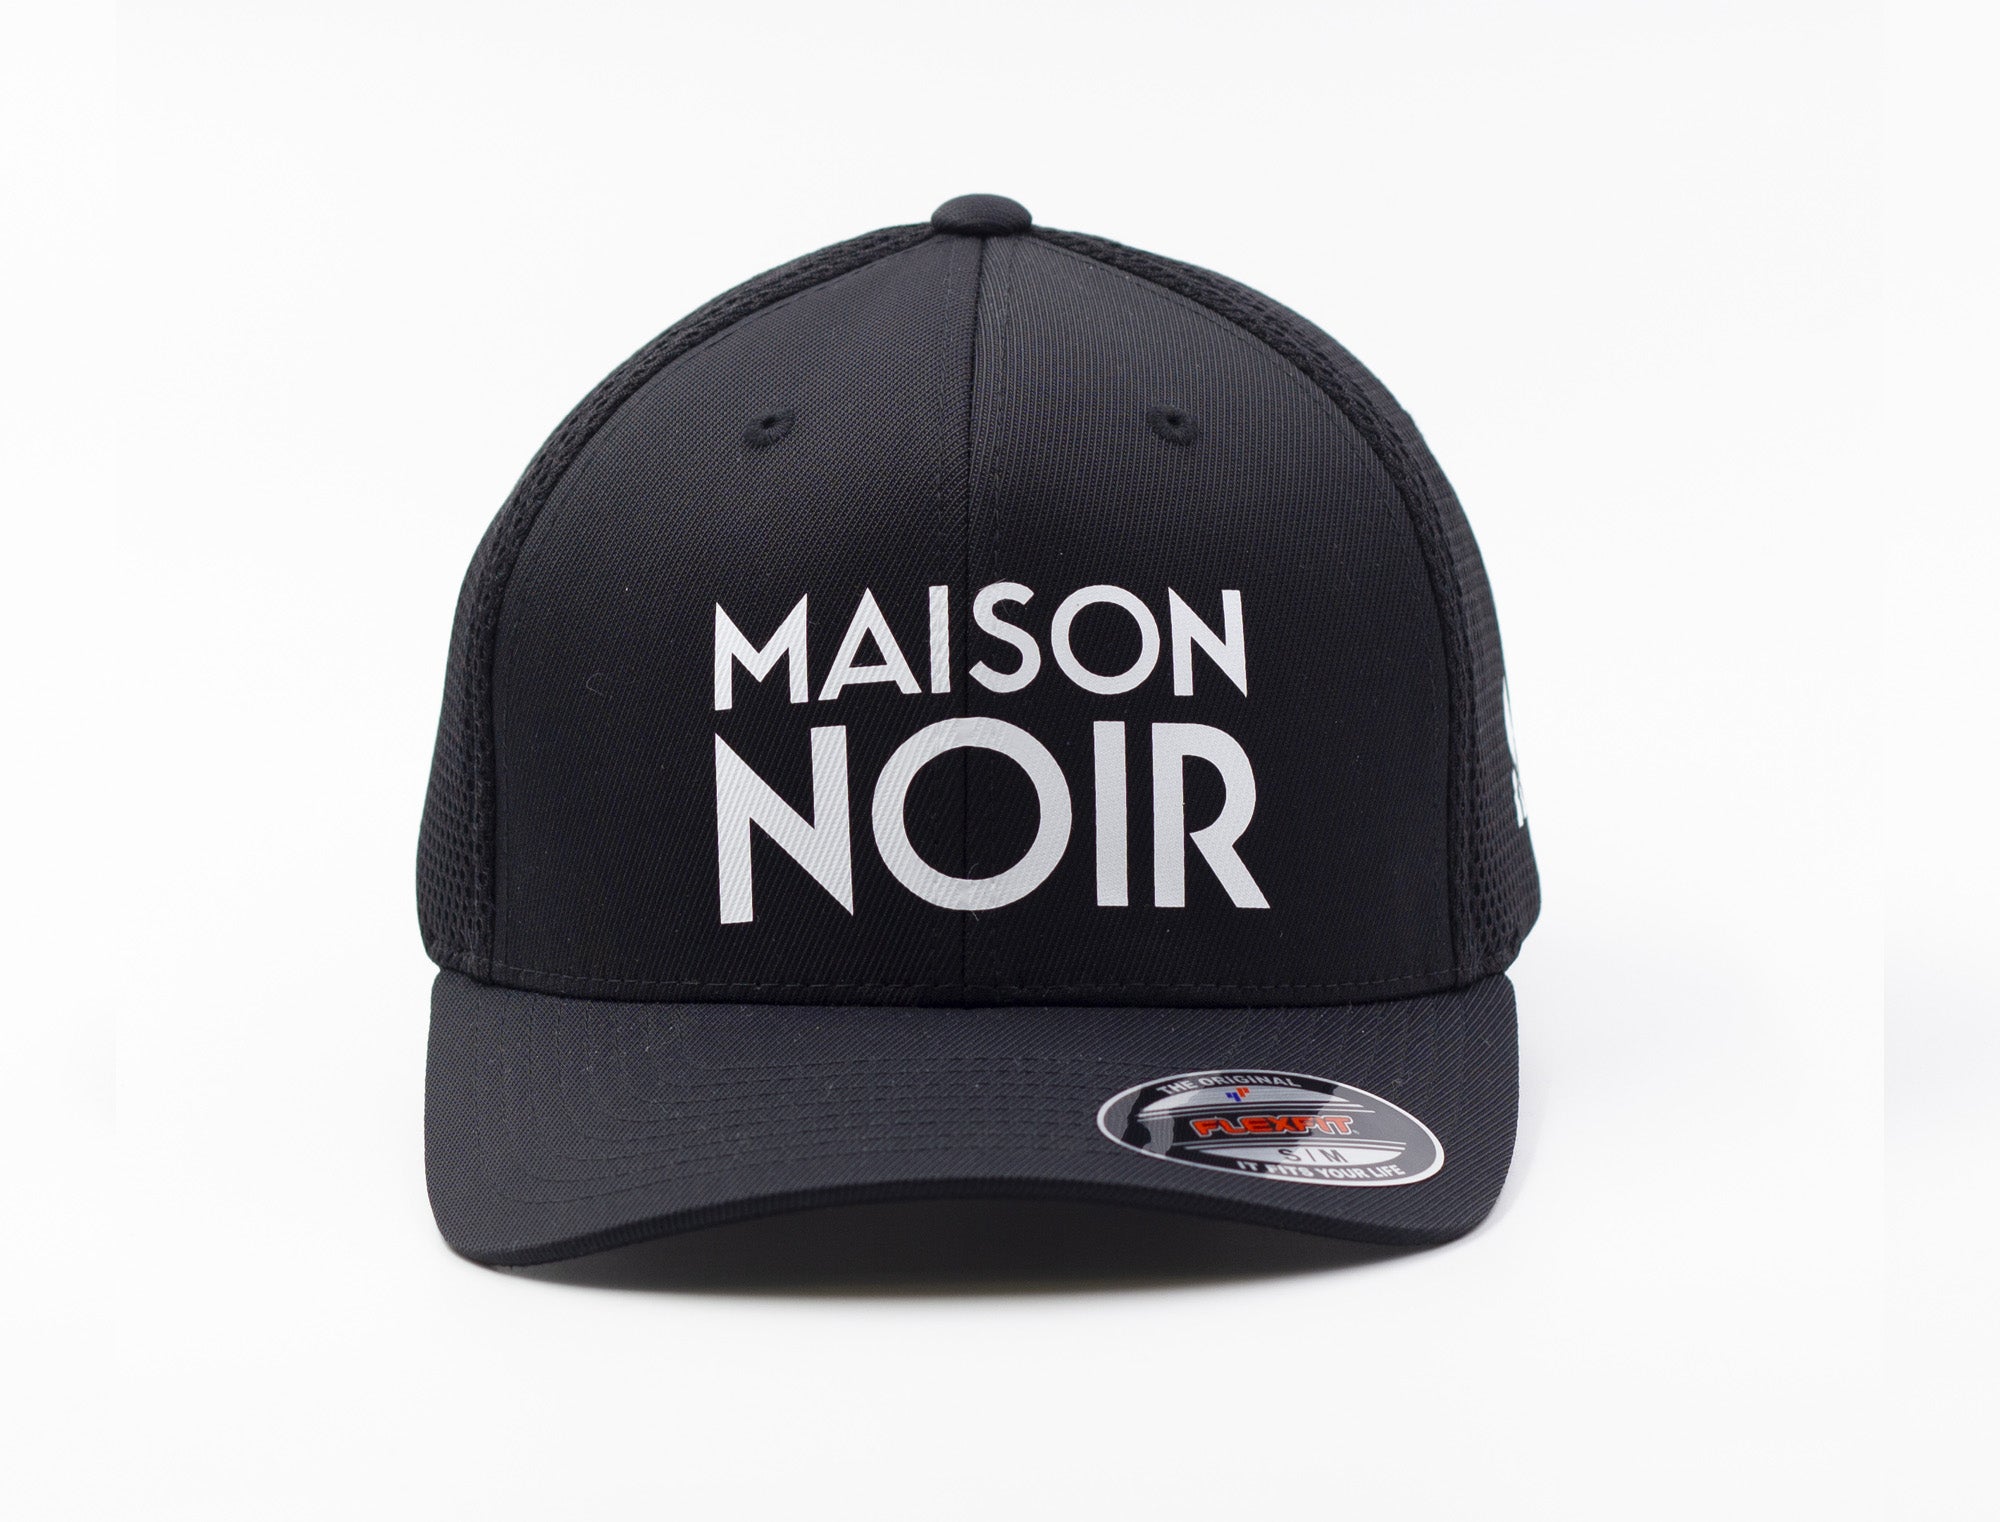 'Maison Noir' White on Black Trucker Hat